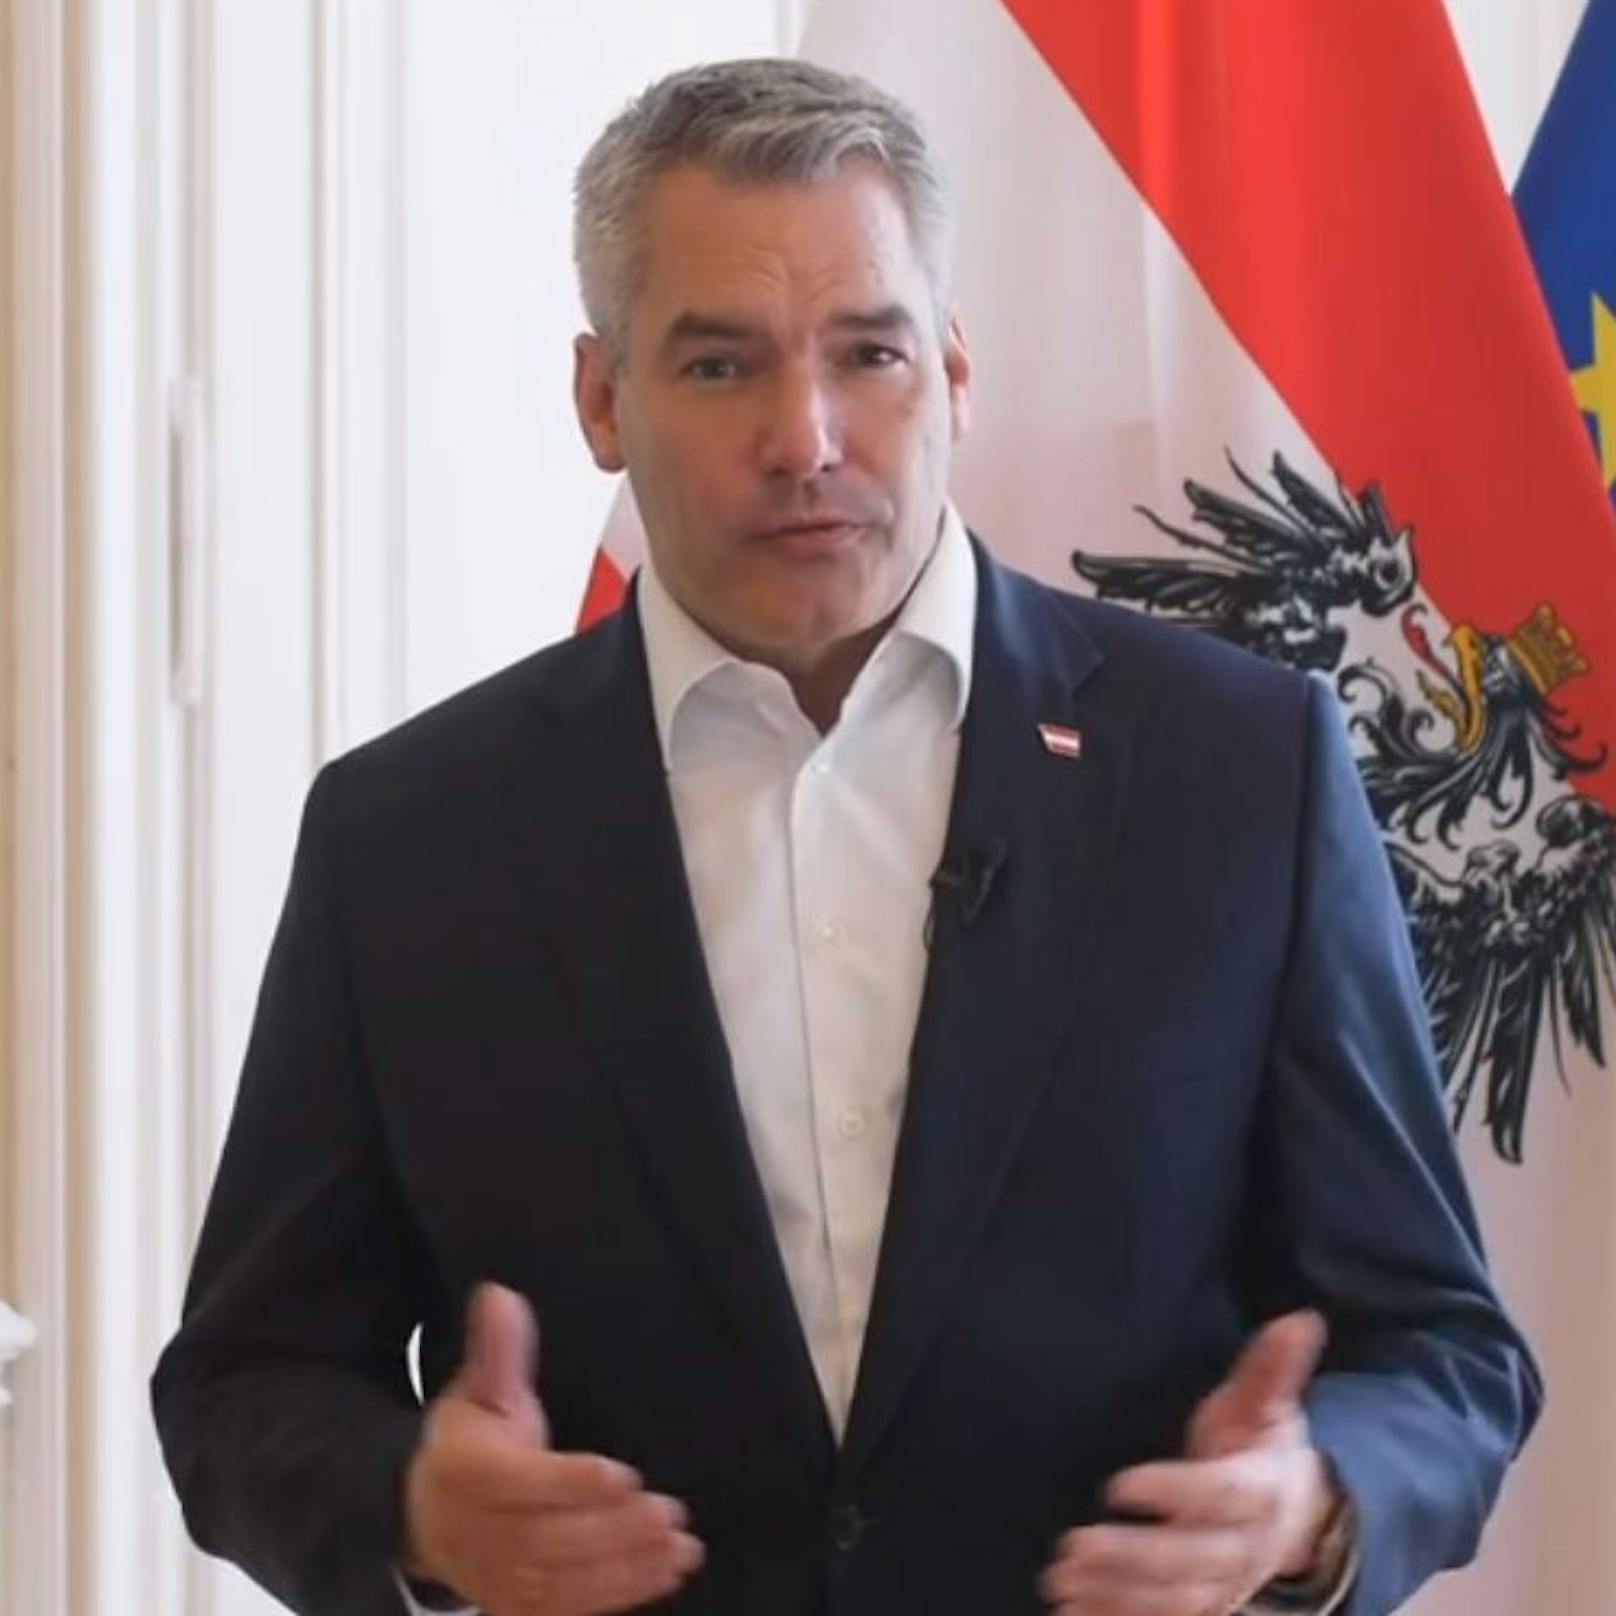 Bundeskanzler Karl Nehammer äußert sich zu dem Aufreger-Video.